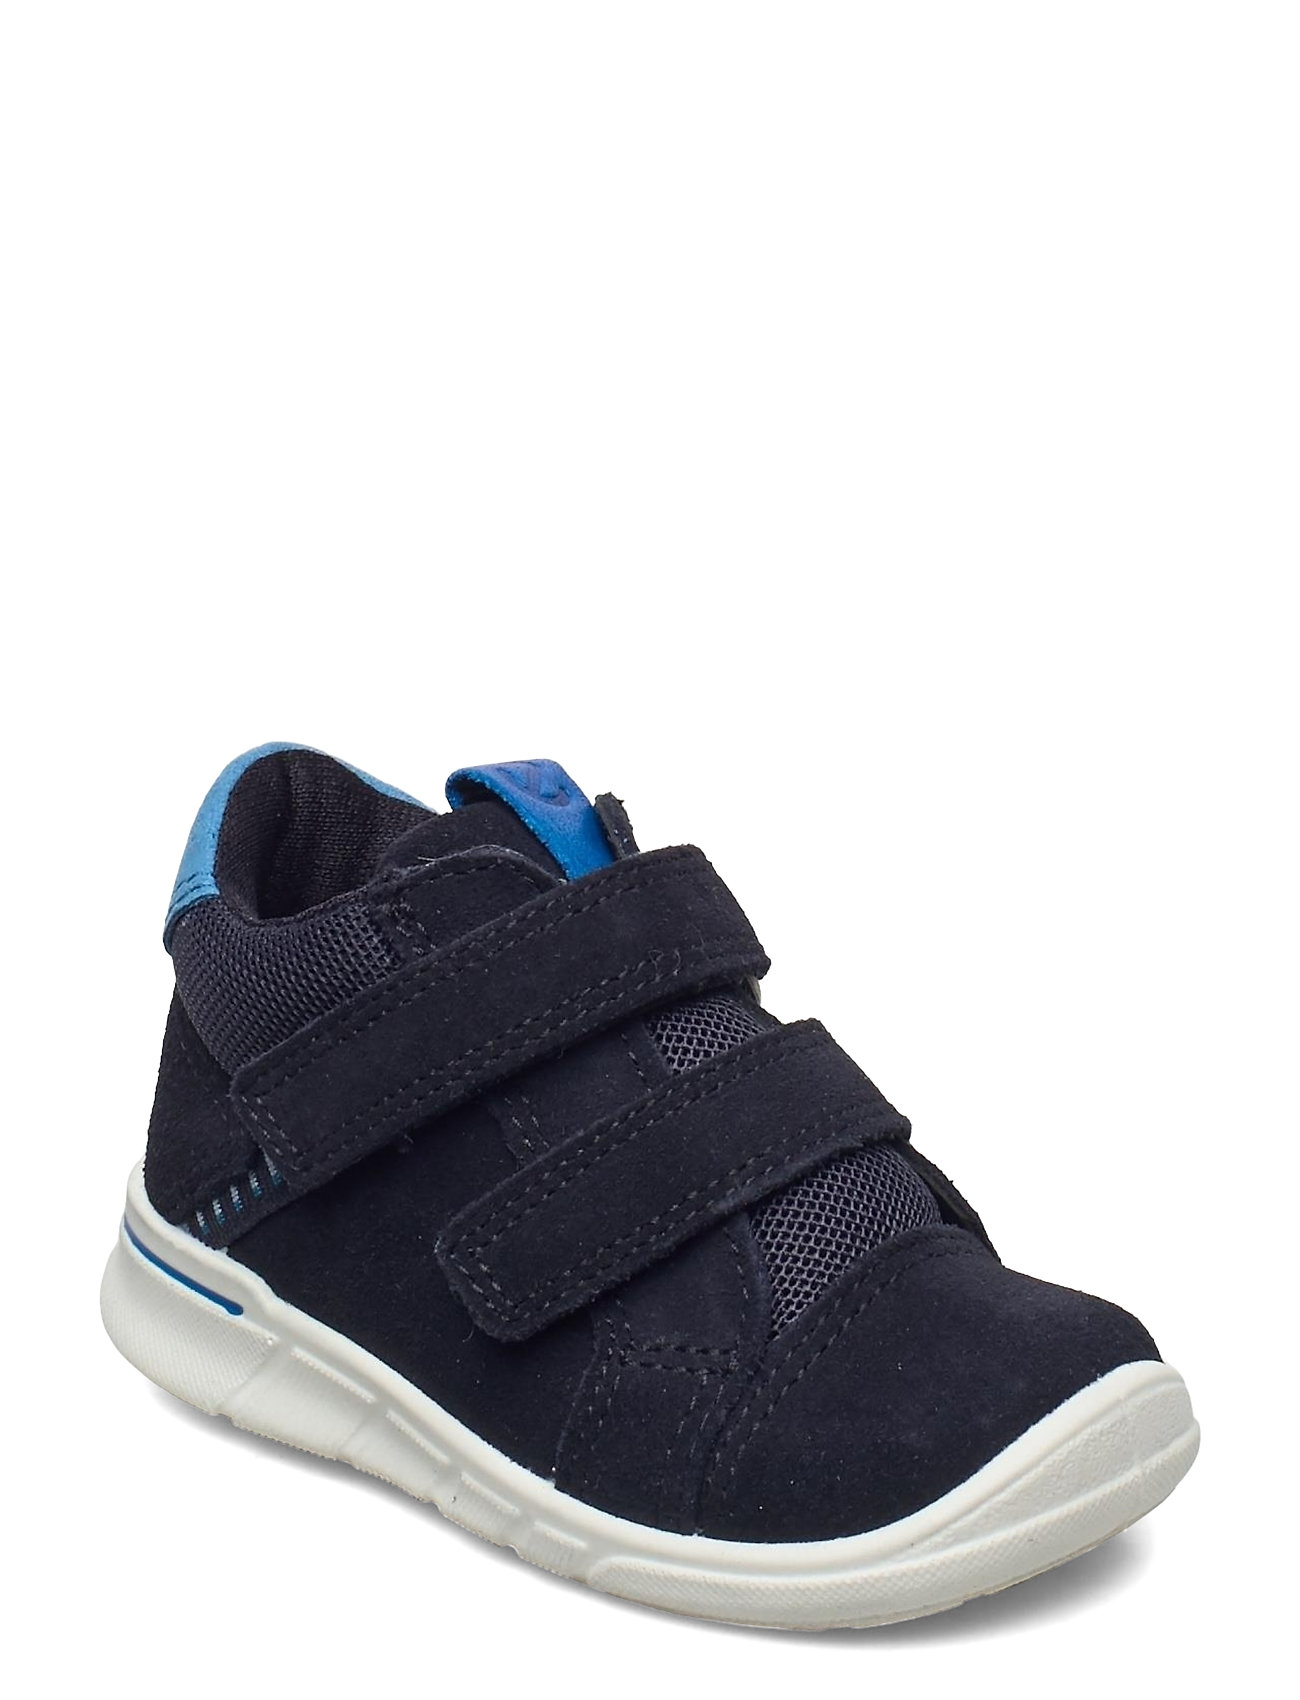 træ desinficere faktureres ECCO sko – First Shoes Pre Walkers Beginner Shoes 18-25 Blå ECCO til børn i  Blå - Pashion.dk